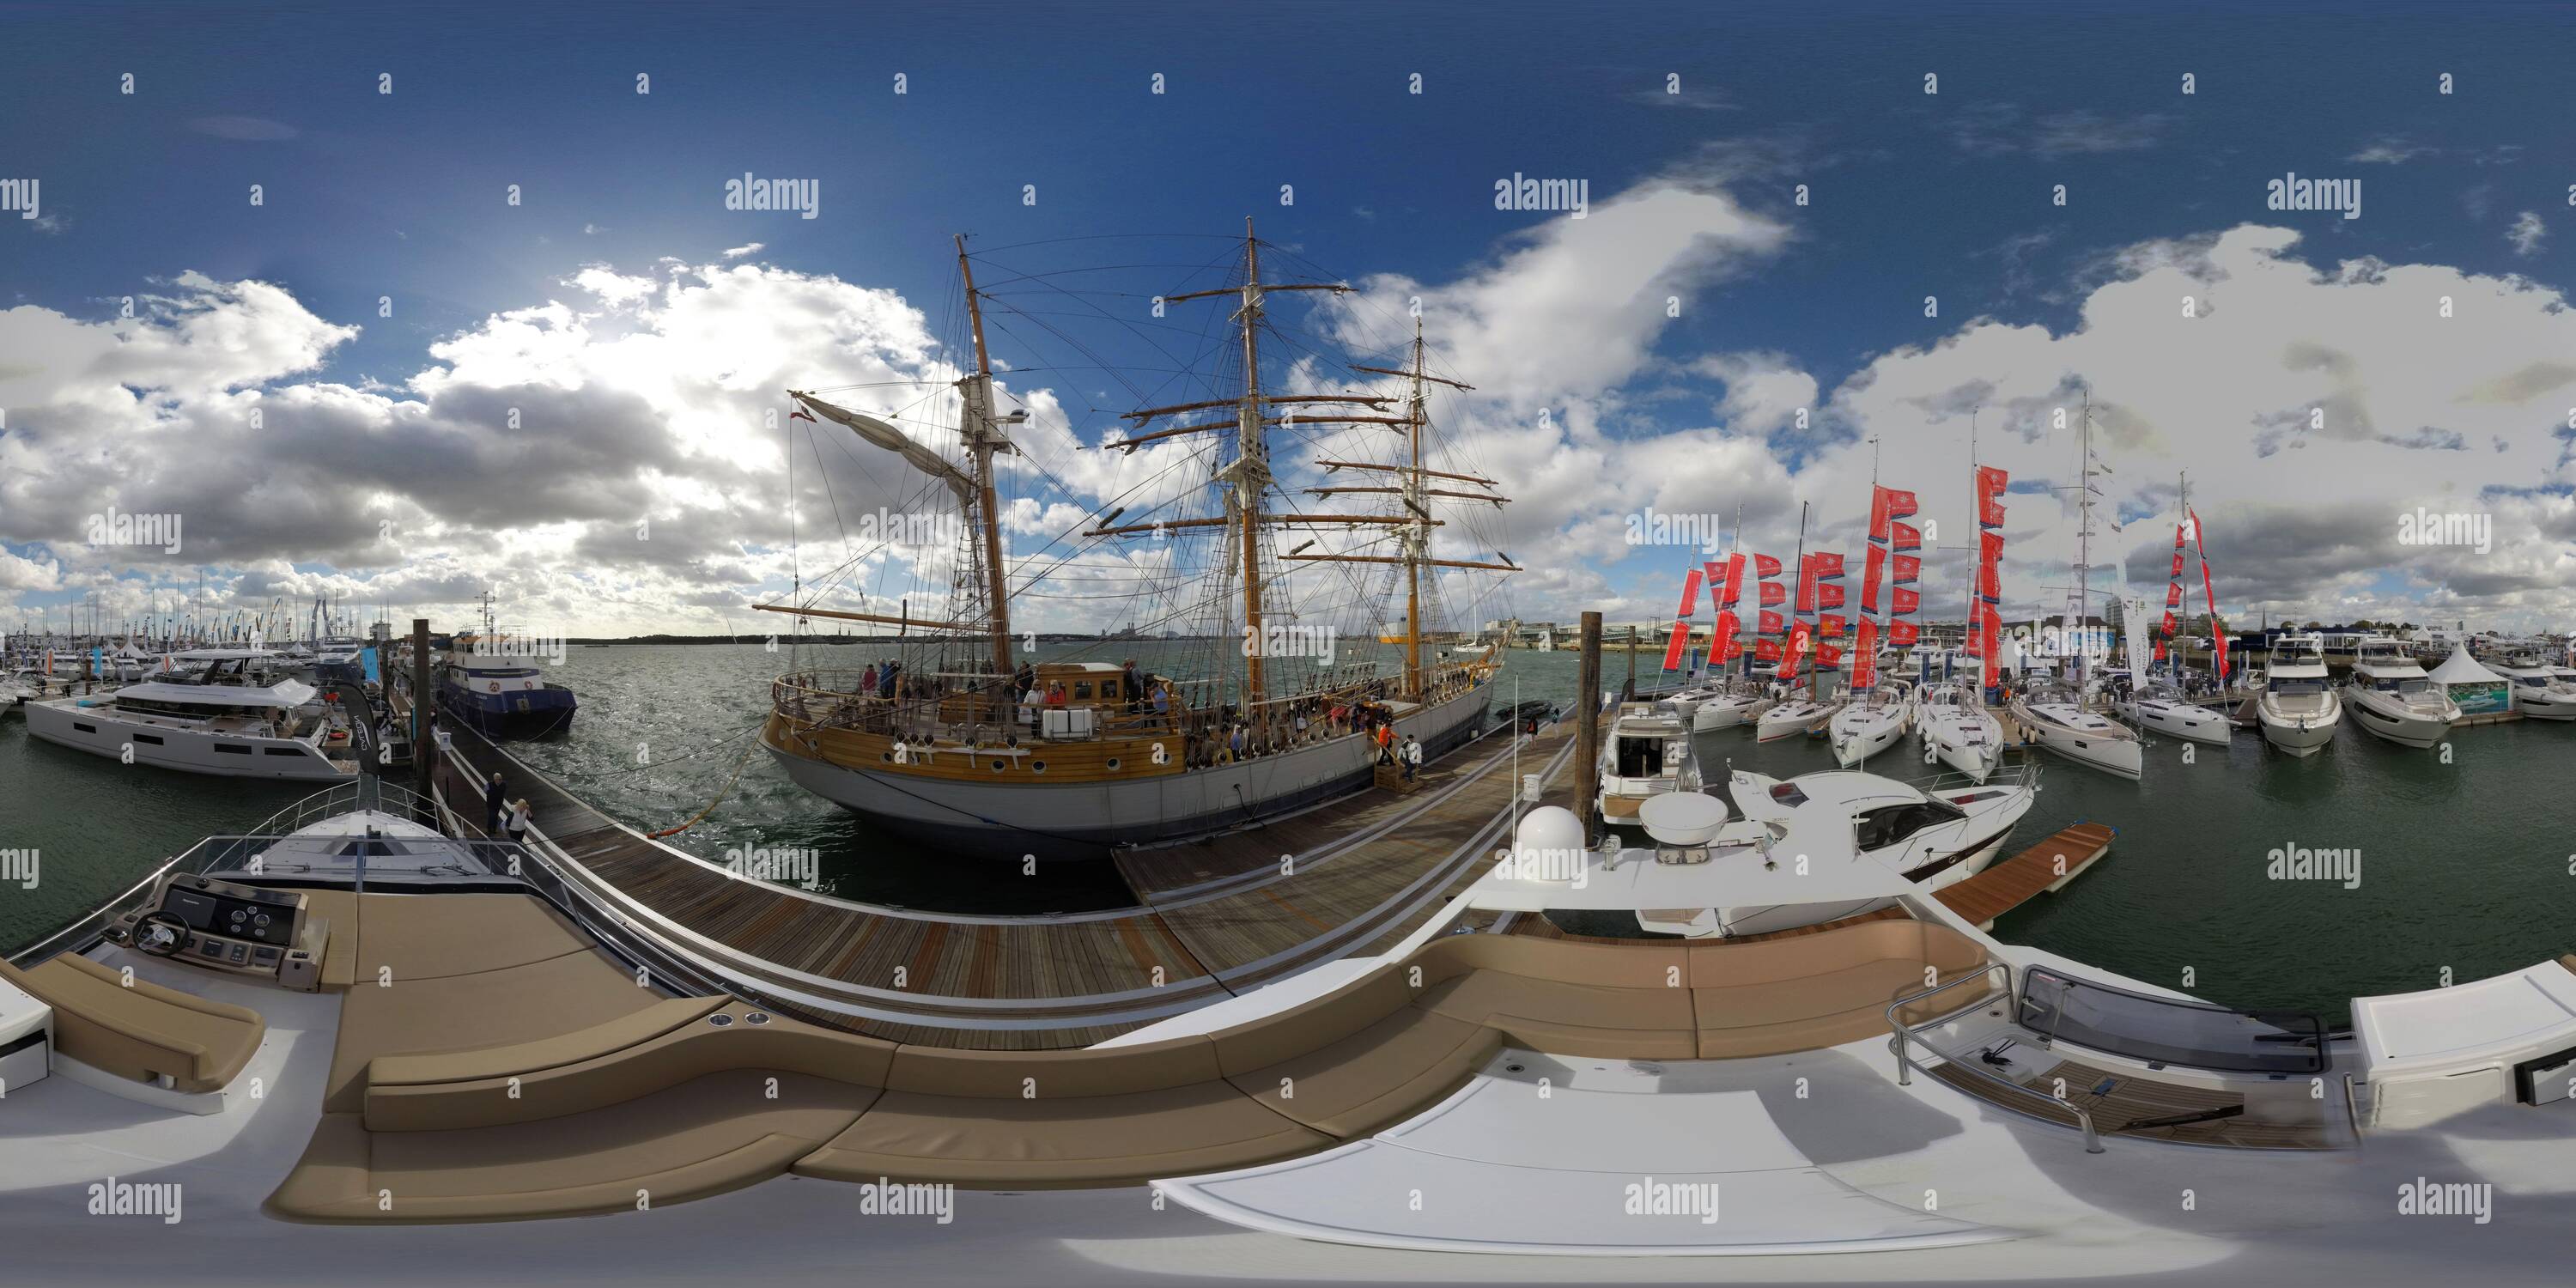 360 Grad Panorama Ansicht von Southampton Boat Show, einschließlich der Tall Ship Kaskelot, die in der äußerst erfolgreichen TV-Programm Poldark verwendet wurde. Bild : Mark Pain / Alamy